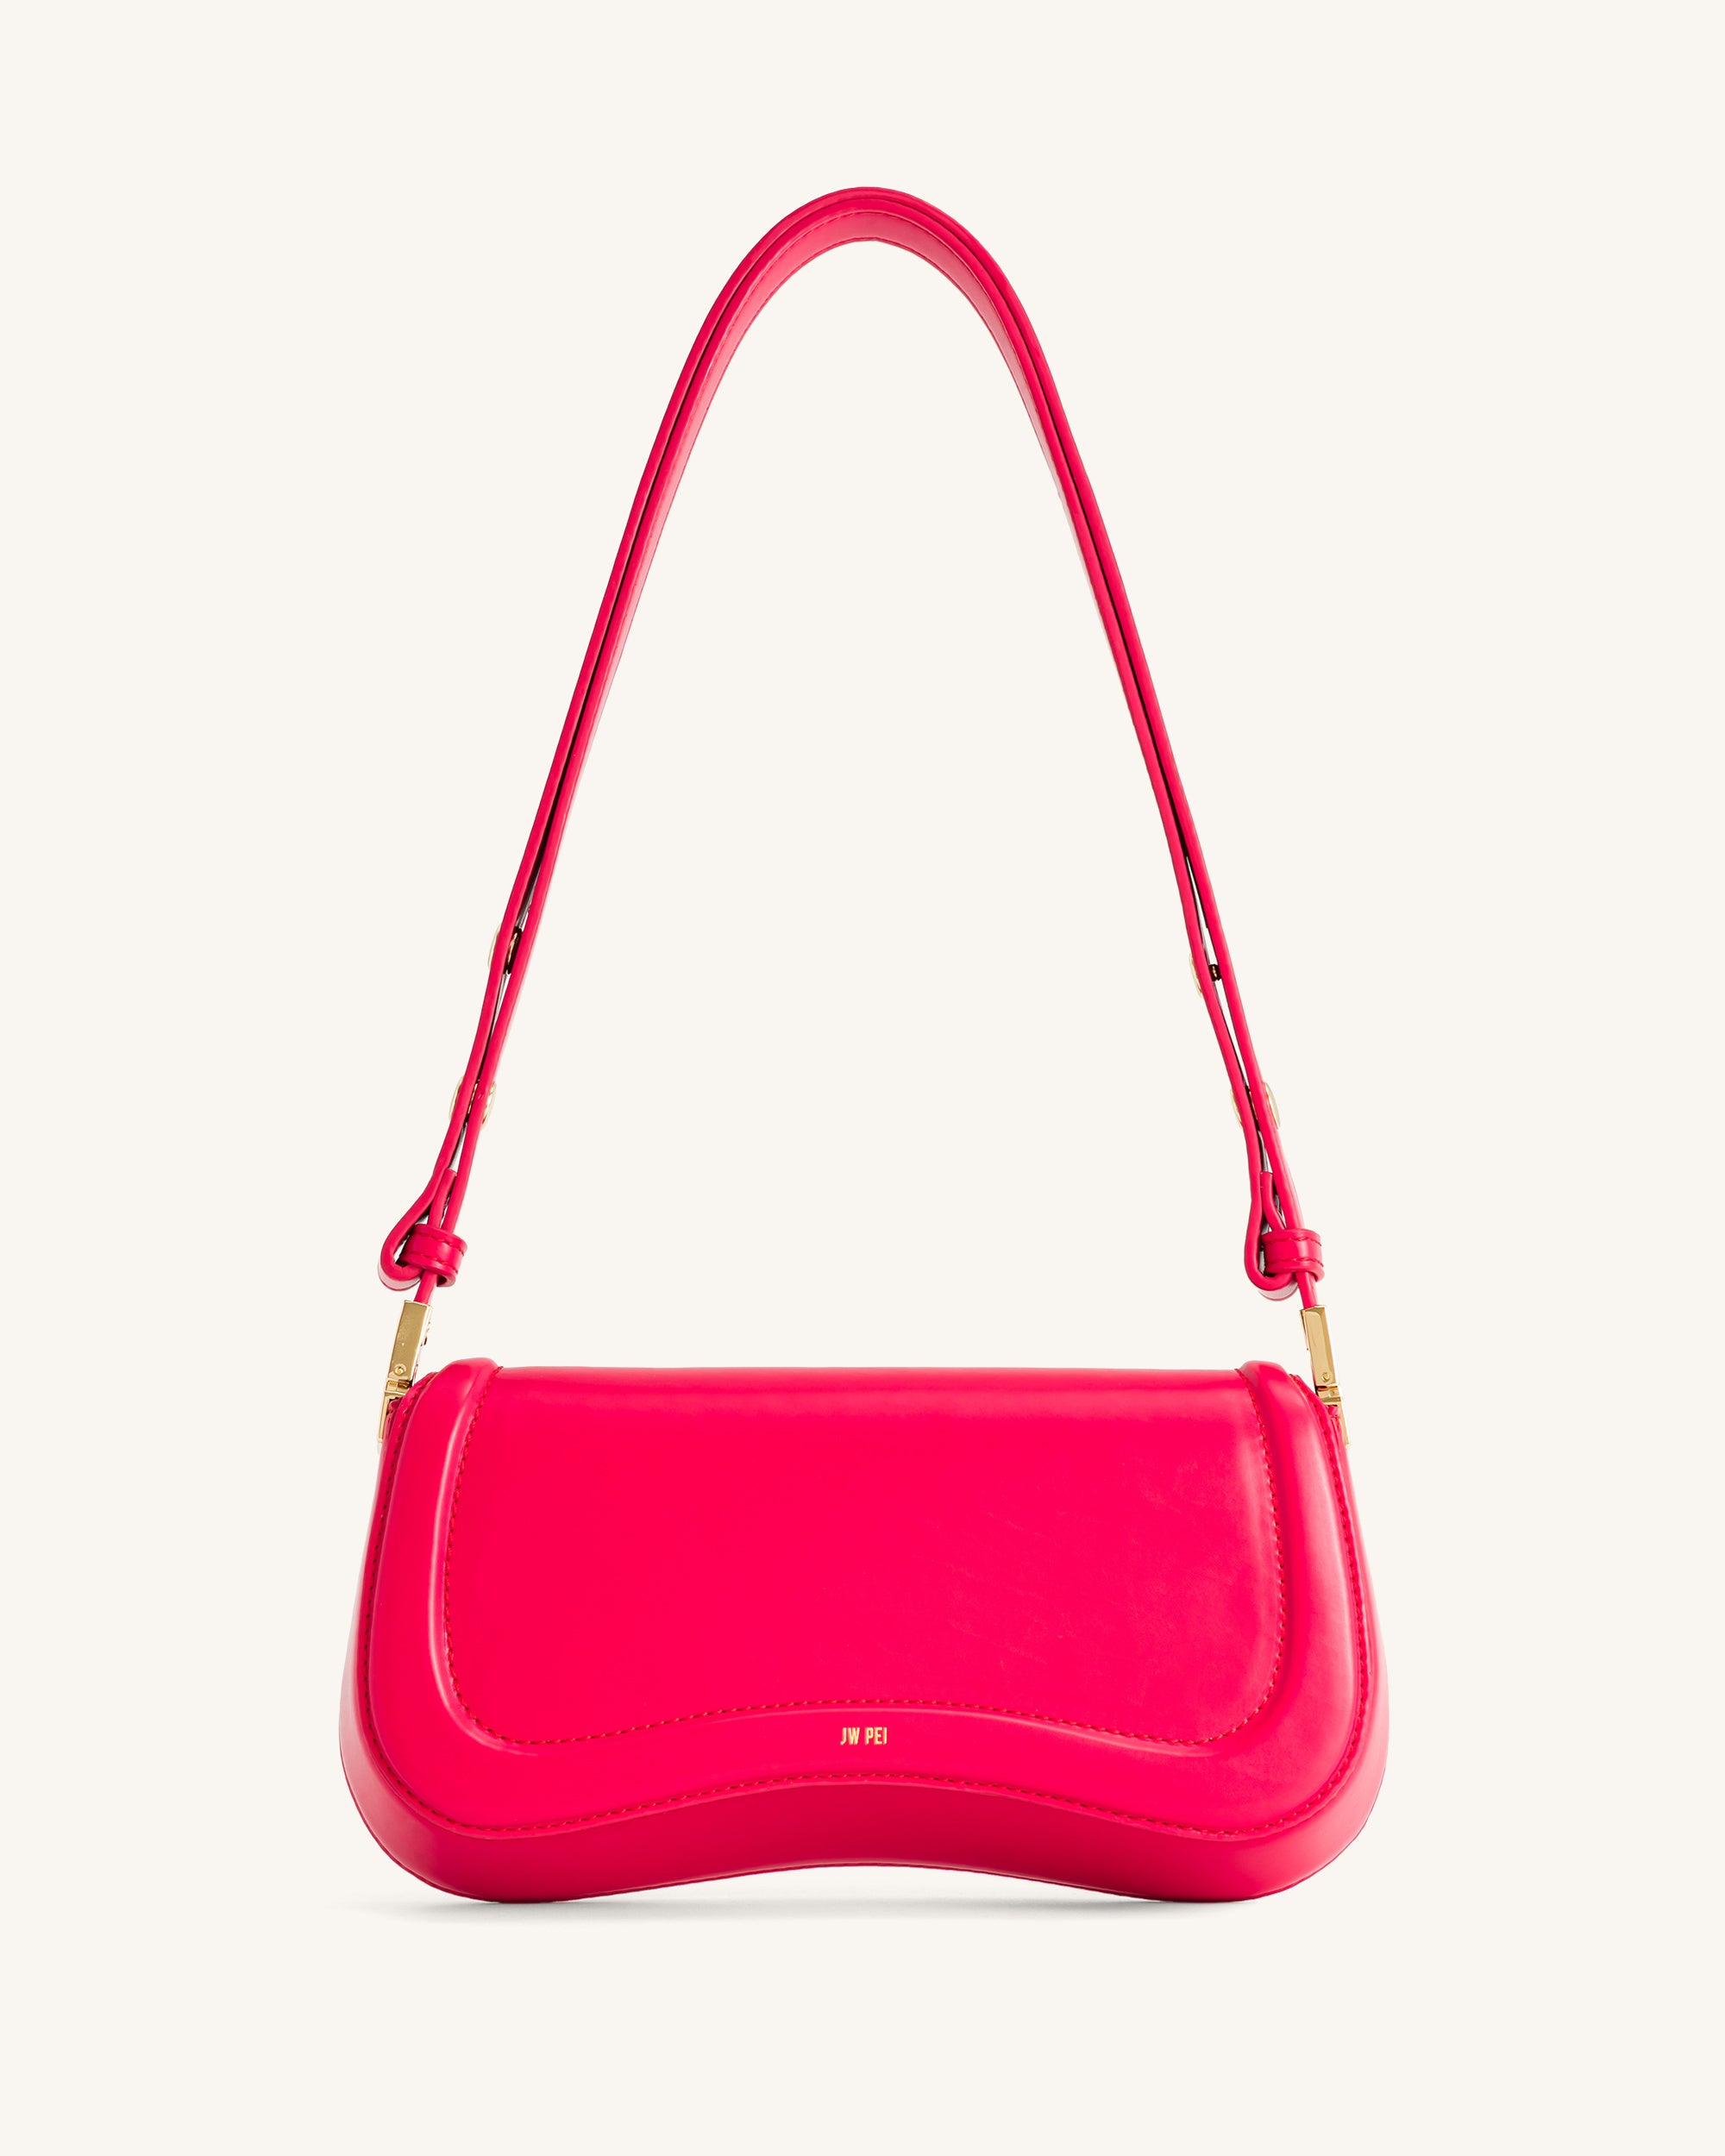 Joy Shoulder Bag - Pink - JW PEI